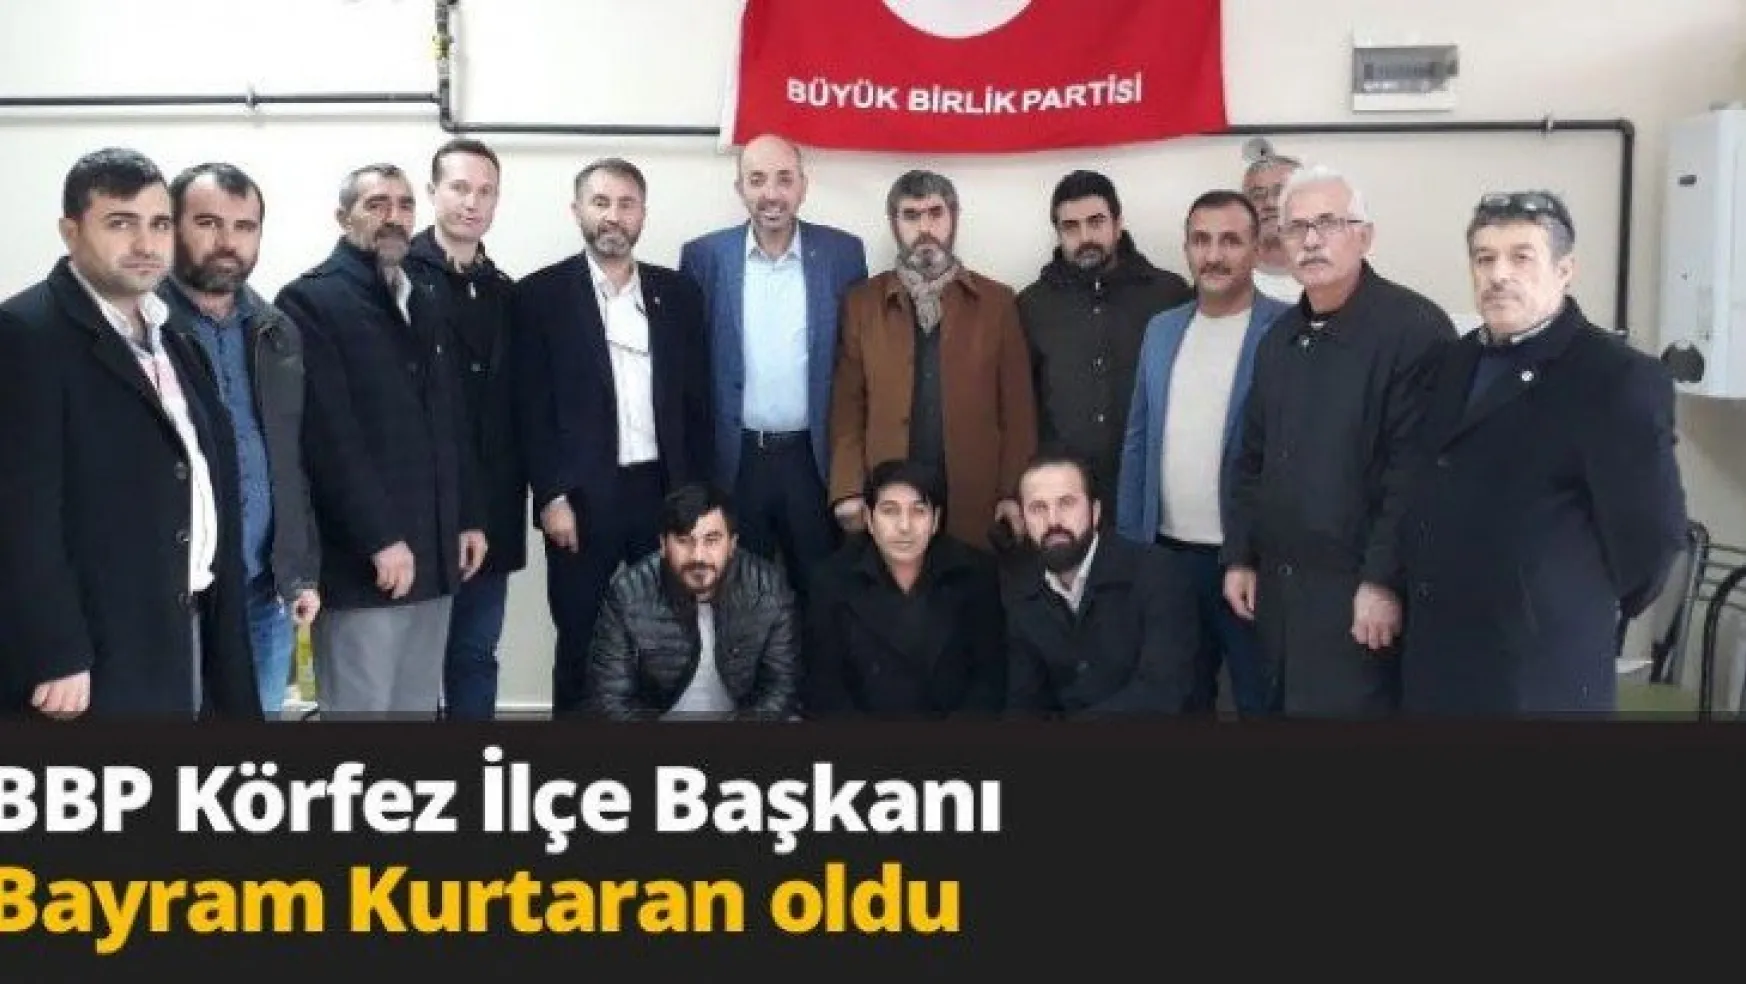 BBP Körfez İlçe Başkanı Bayram Kurtaran oldu